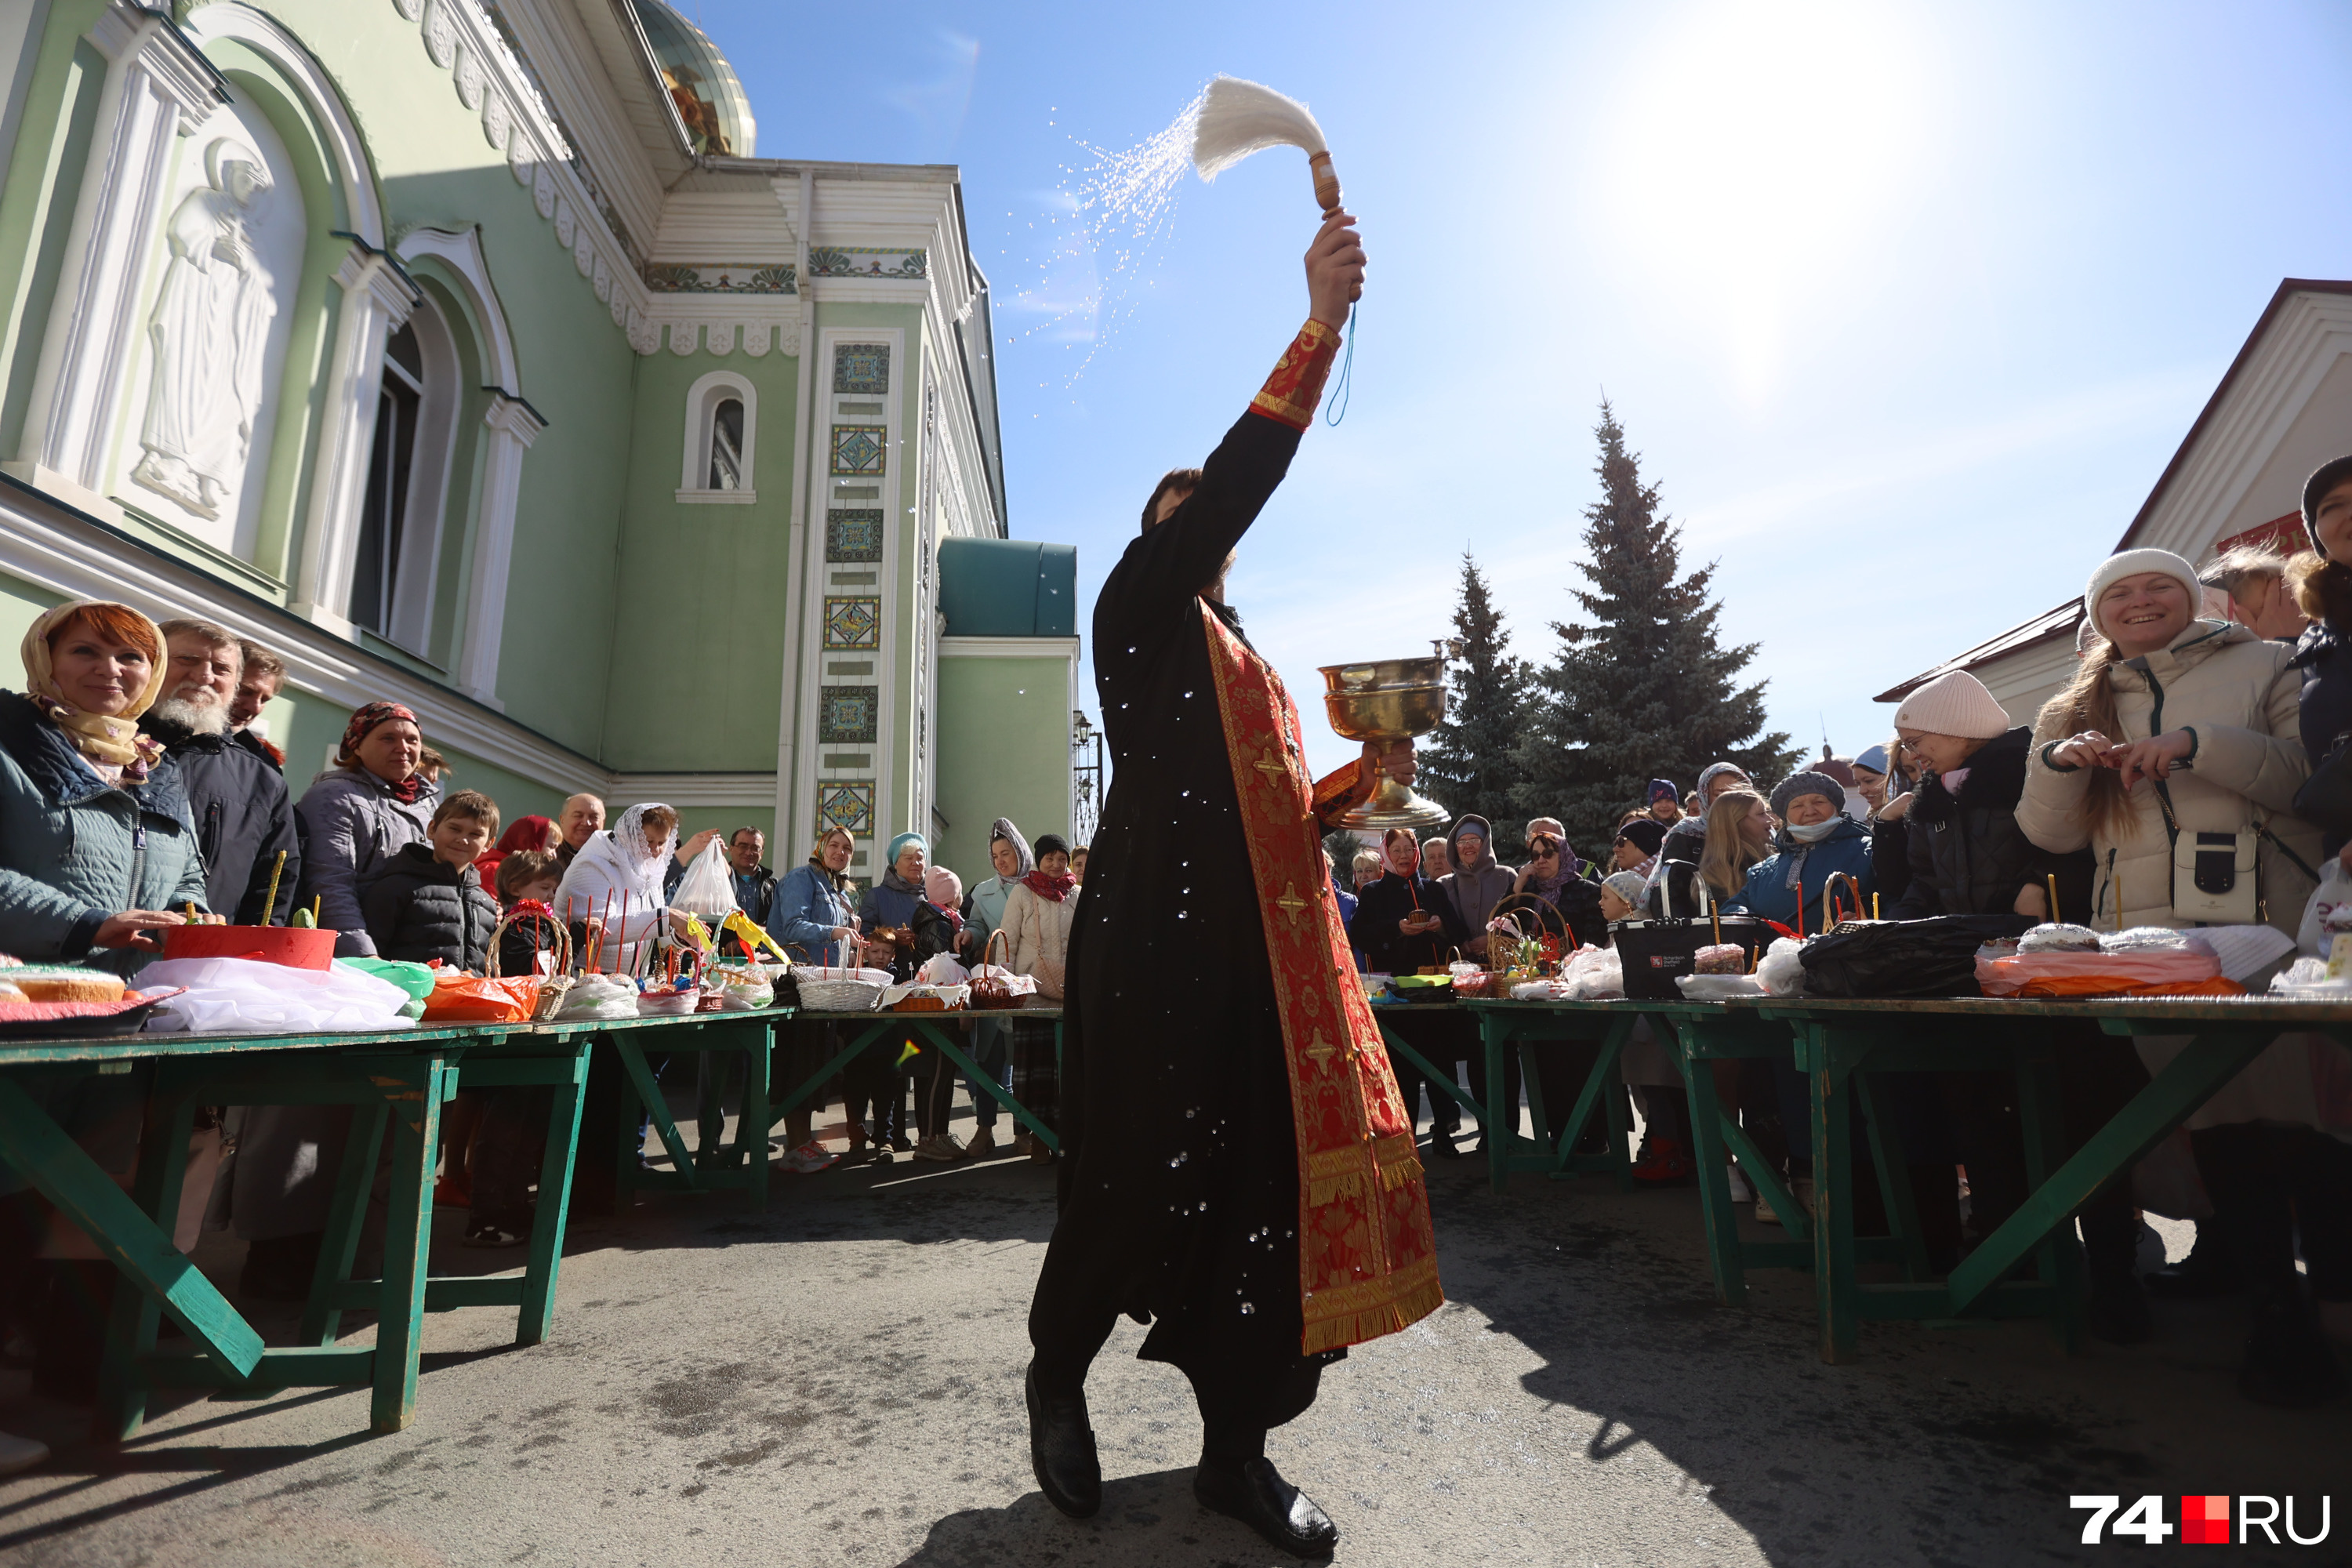 Сразу после литургии православные выстроились перед храмом, чтобы освятить куличи и яйца